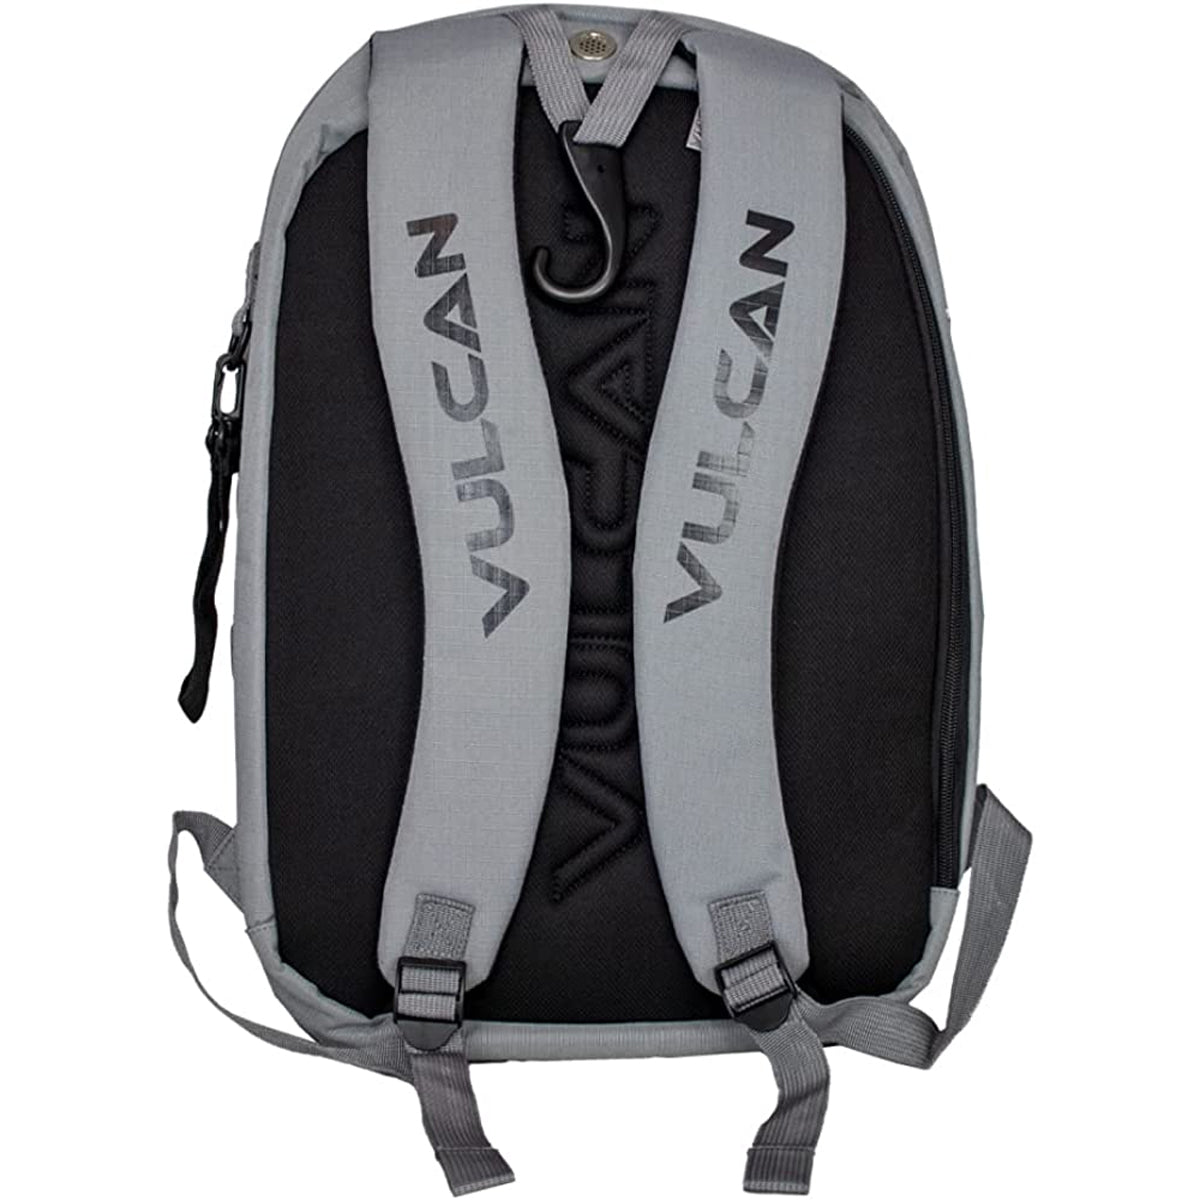 Vulcan VTOUR Backpack - Gray/Black Vulcan